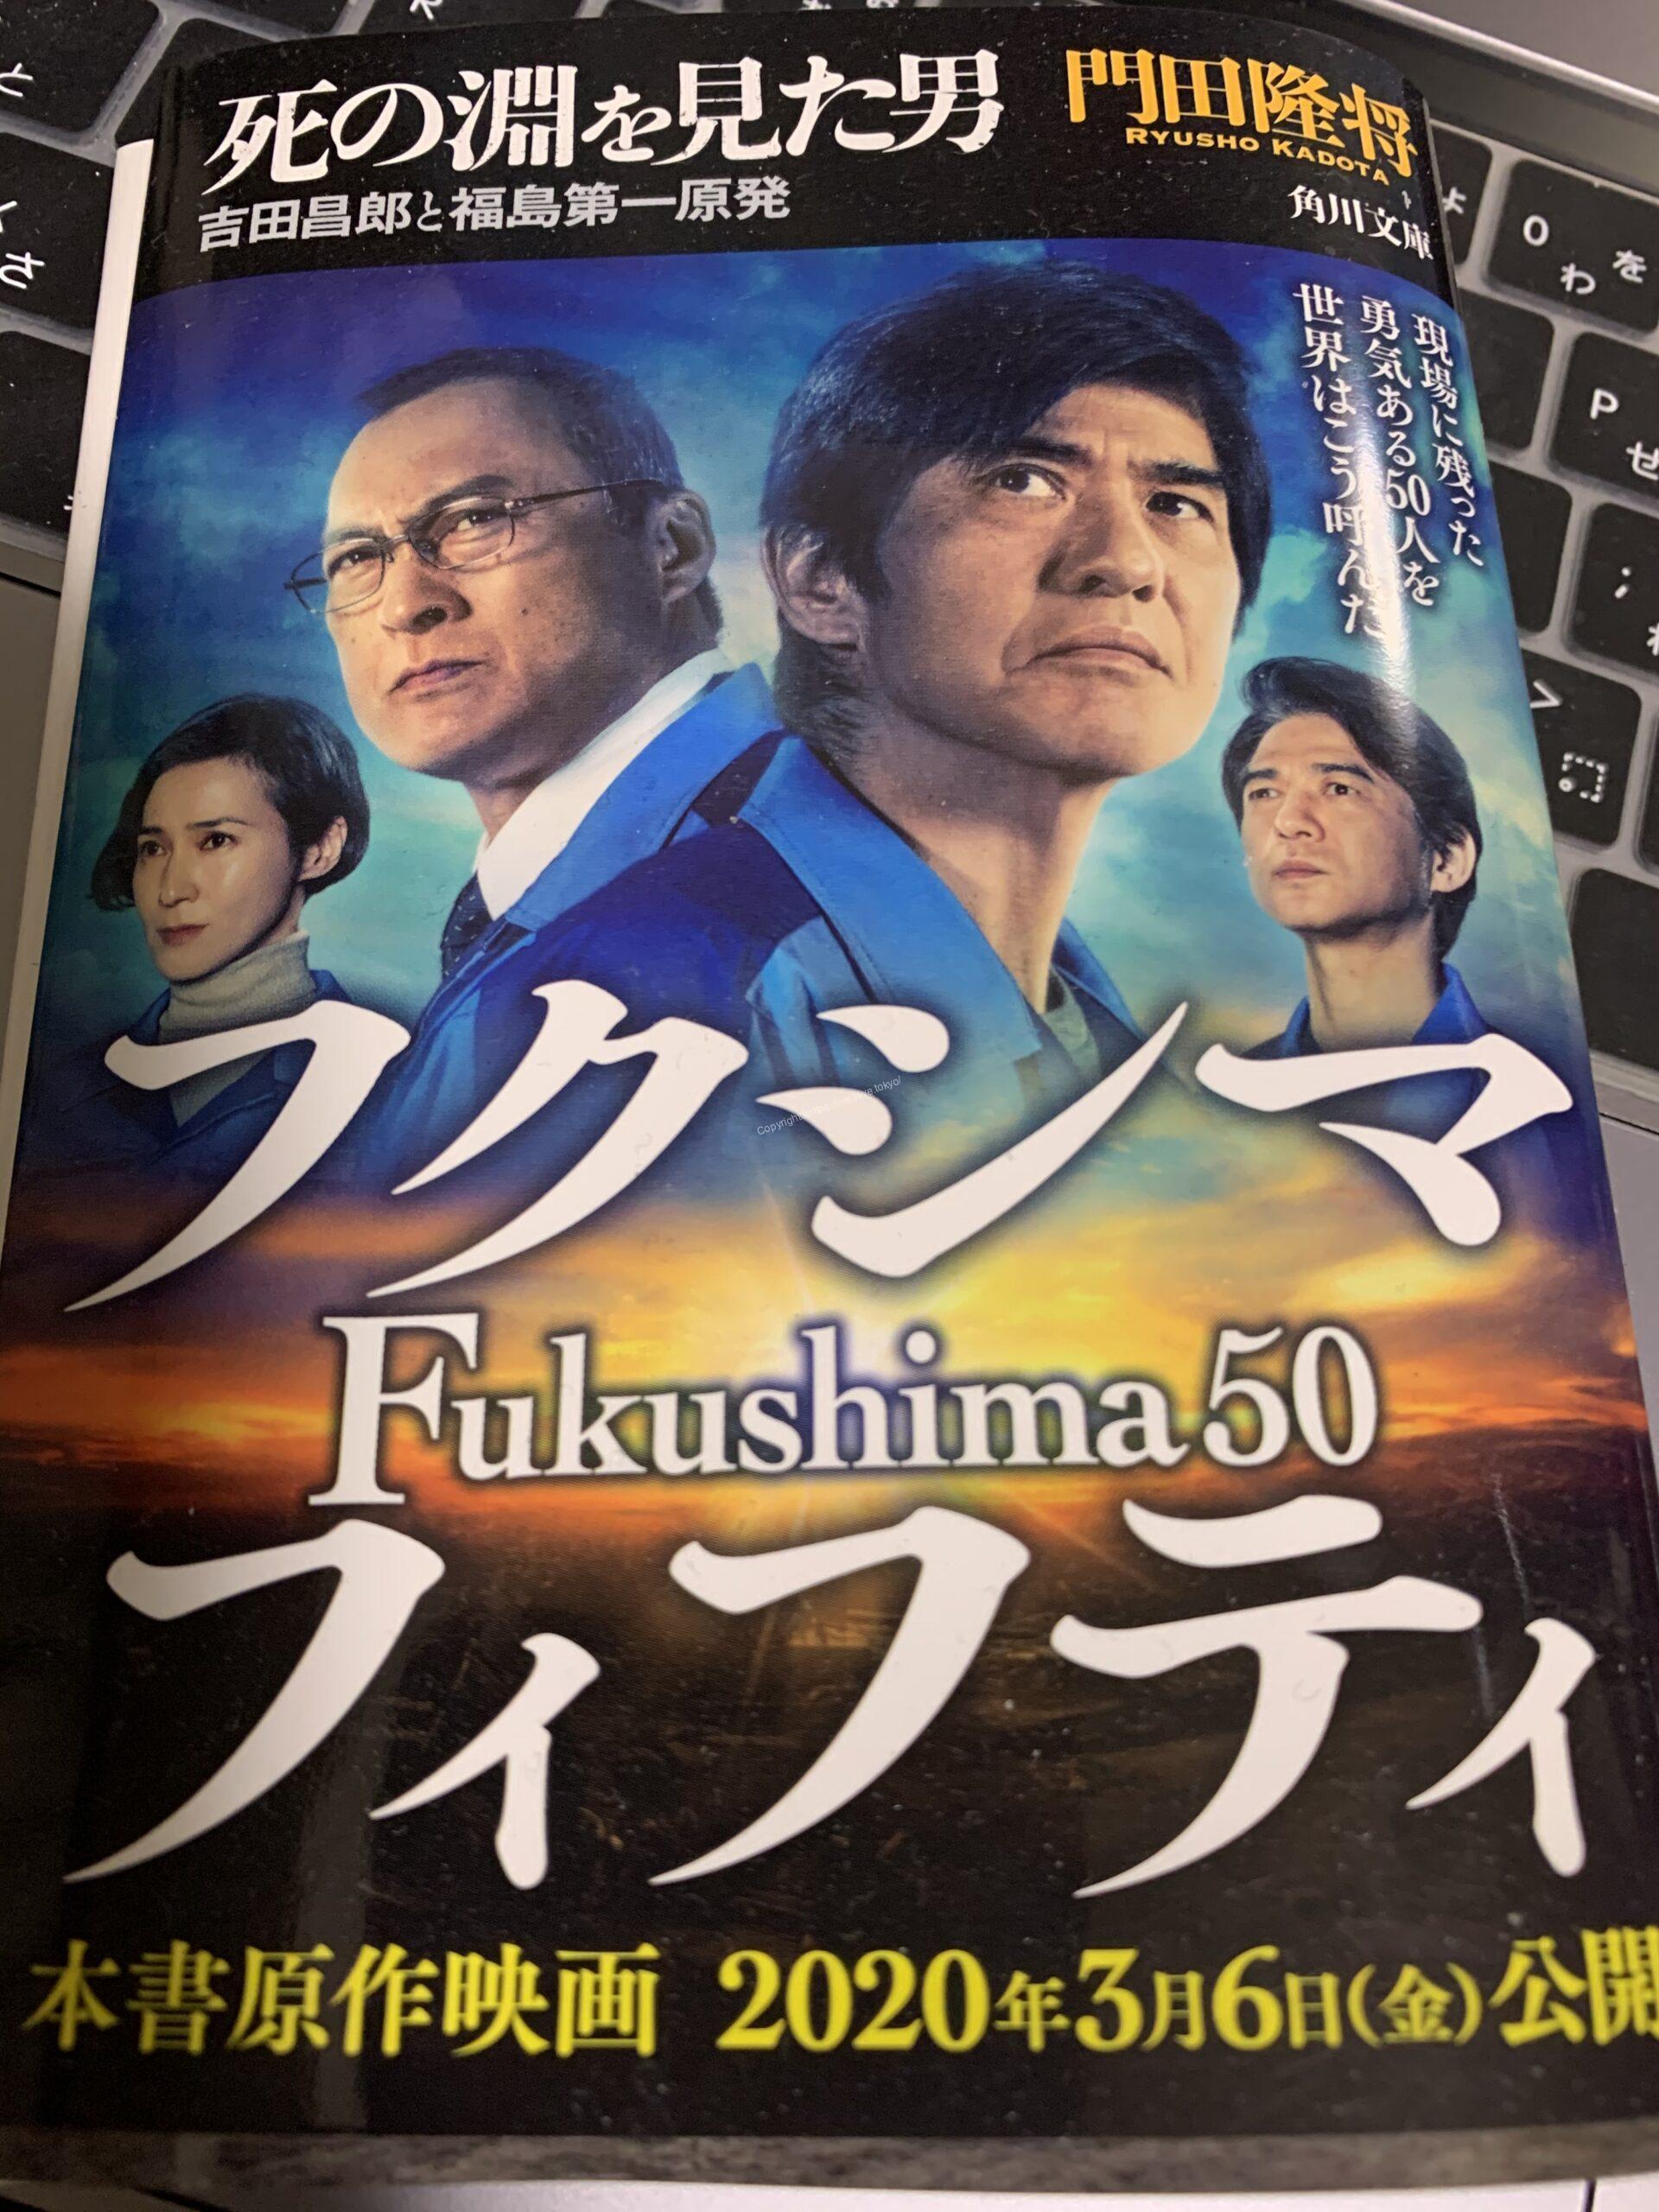 Fukushima 50 原作「死の淵を見た男」